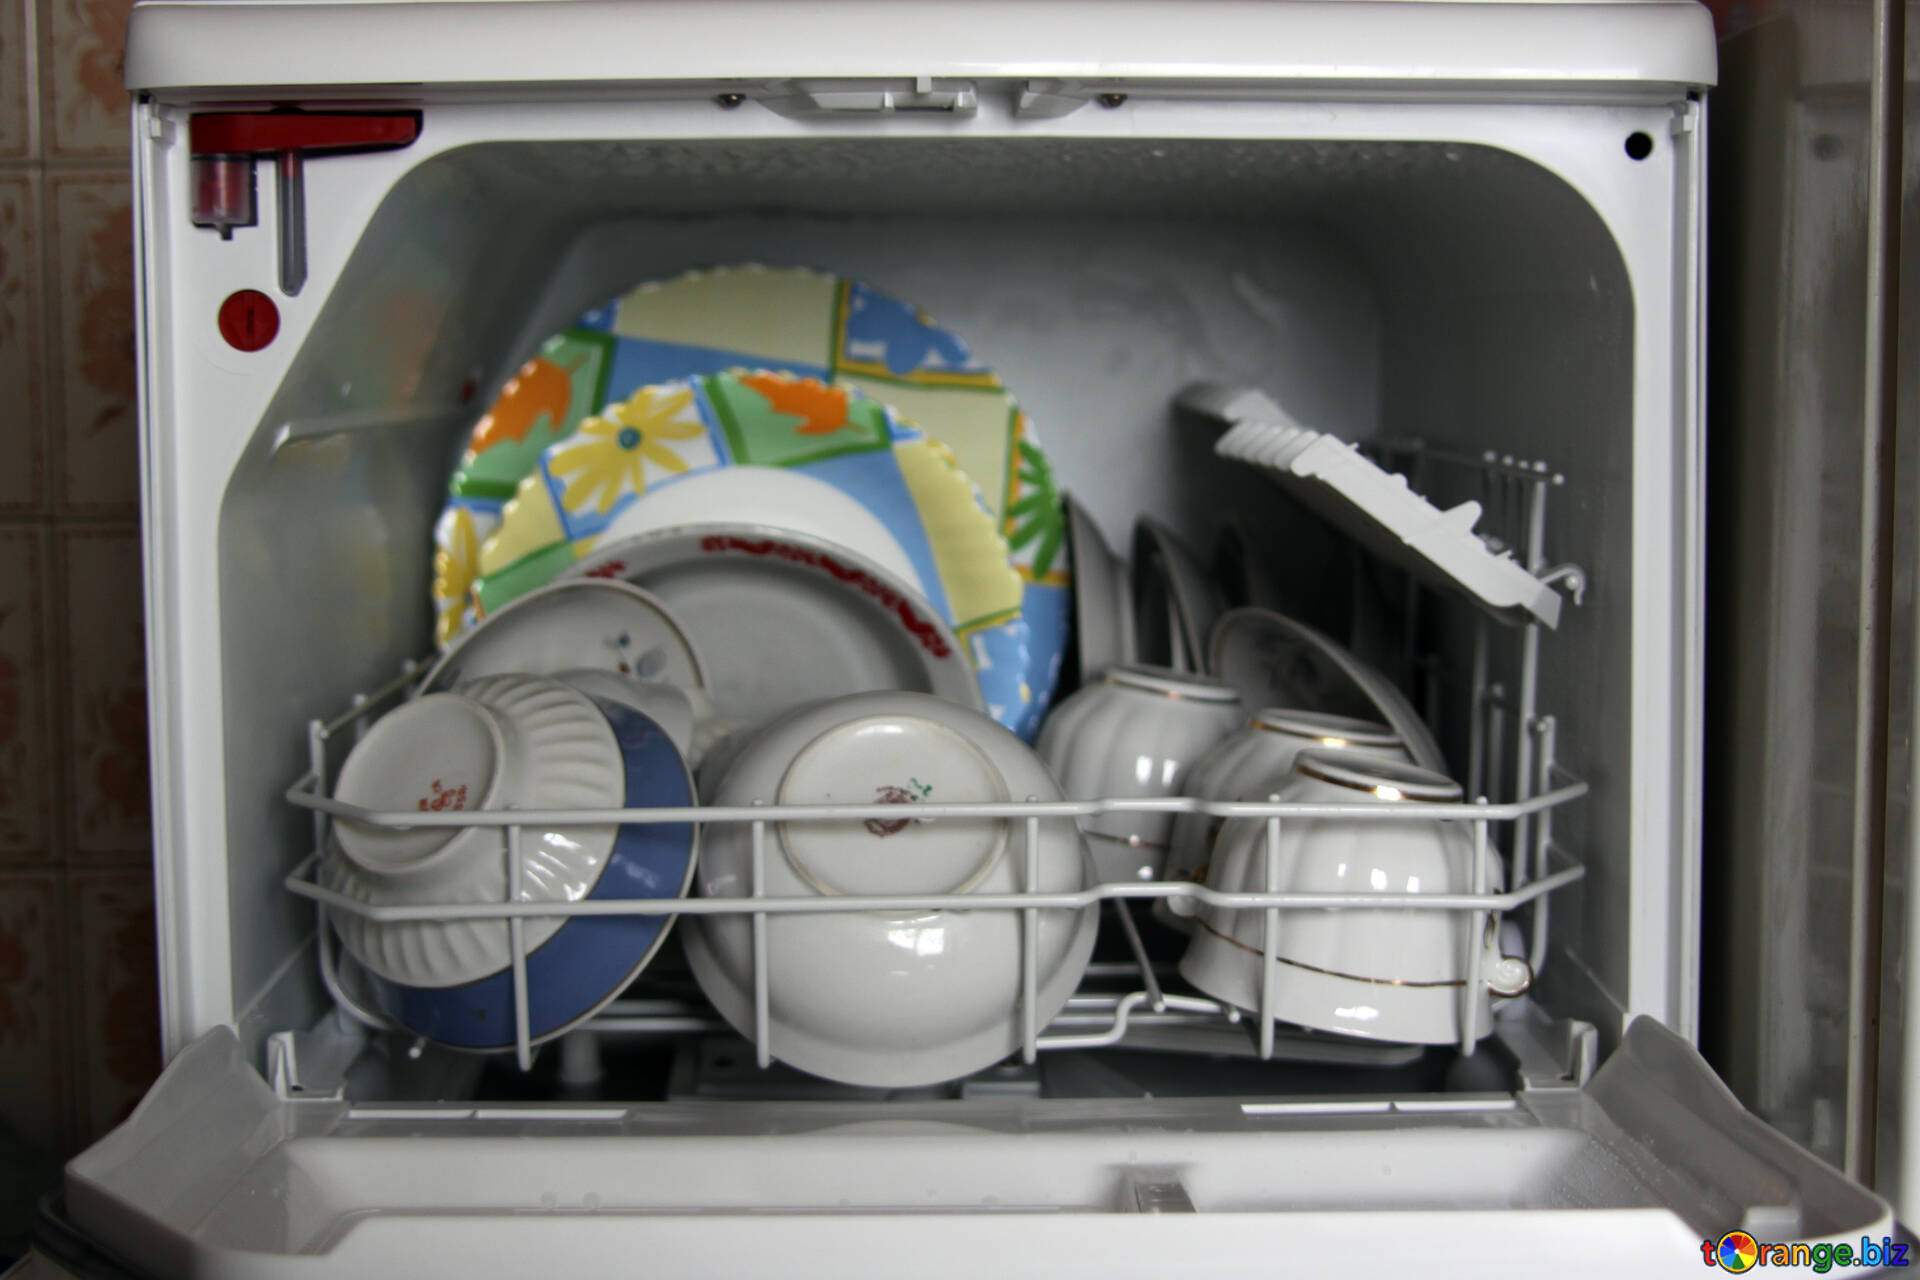 Кастрюли можно мыть в посудомойке. Машина п/моечная ПММ-к1. МПТ-1700 посудомоечная машина. Посуда в посудомоечной машине. Загрузка посуды в посудомоечную машину кастрюли.